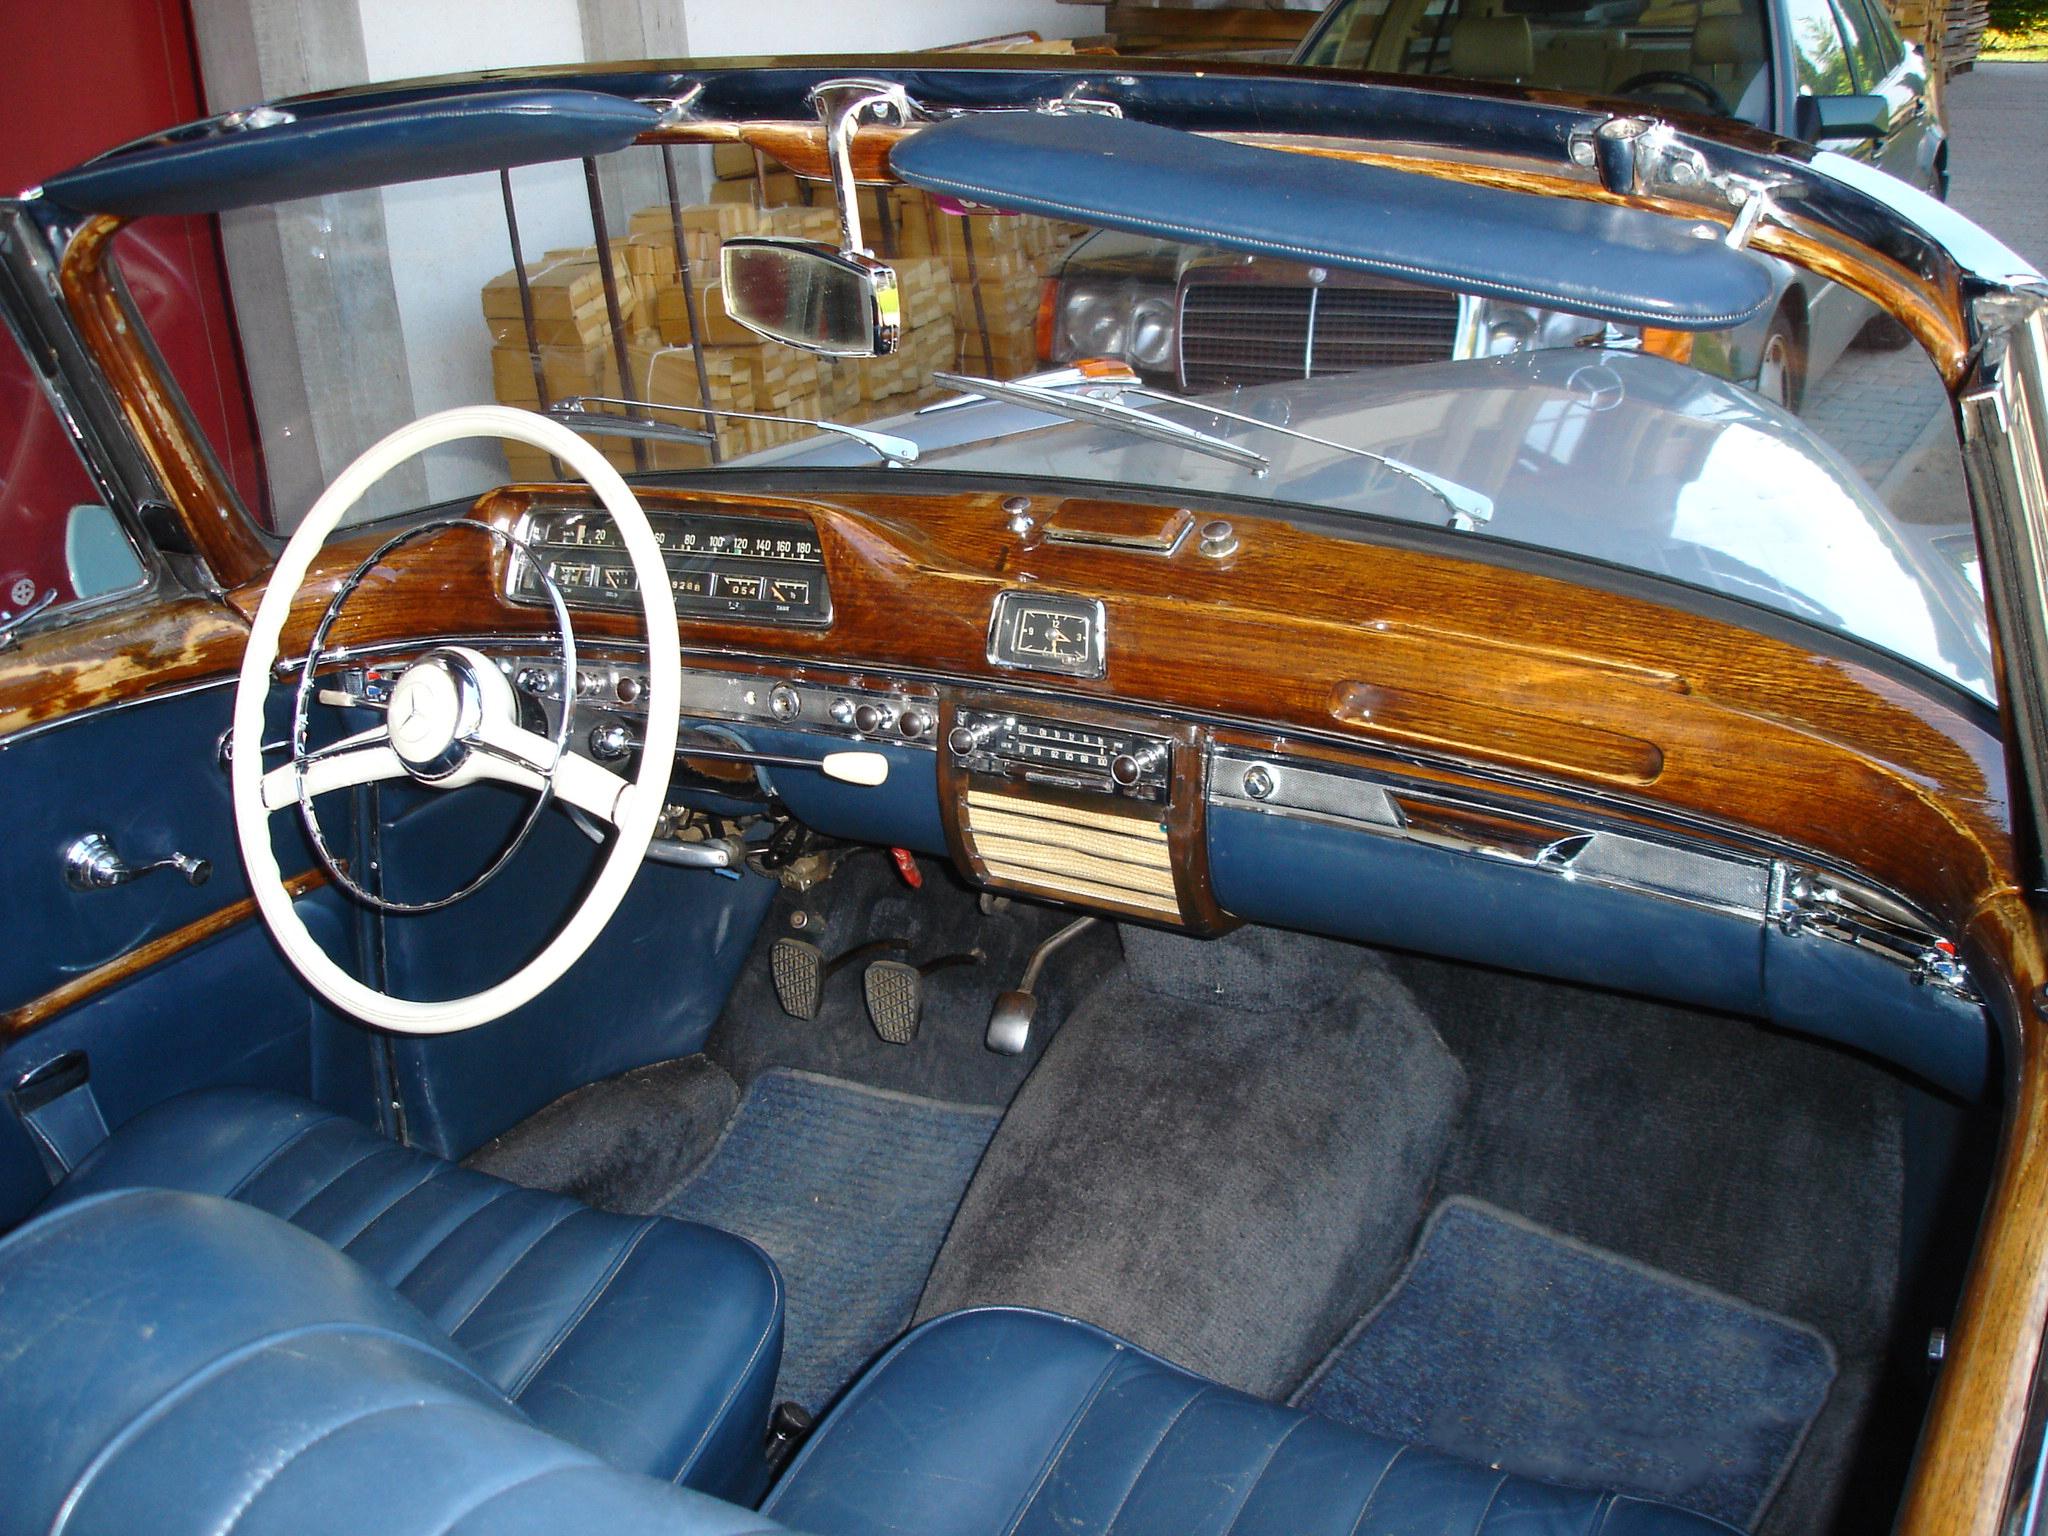 Mercedes Benz 220 S Cabriolet (W180)
Silbermetallic, Innen blau Verdeck blau
Versicherung Allianz Swiss hat den Zustand 2 ermittelt

Baujahr : 1959

Tag der ersten Anmeldung: 1.6.1959

Fahrgestell-Nr. 180 030-10-9508264

Karosserie-Nr. 180